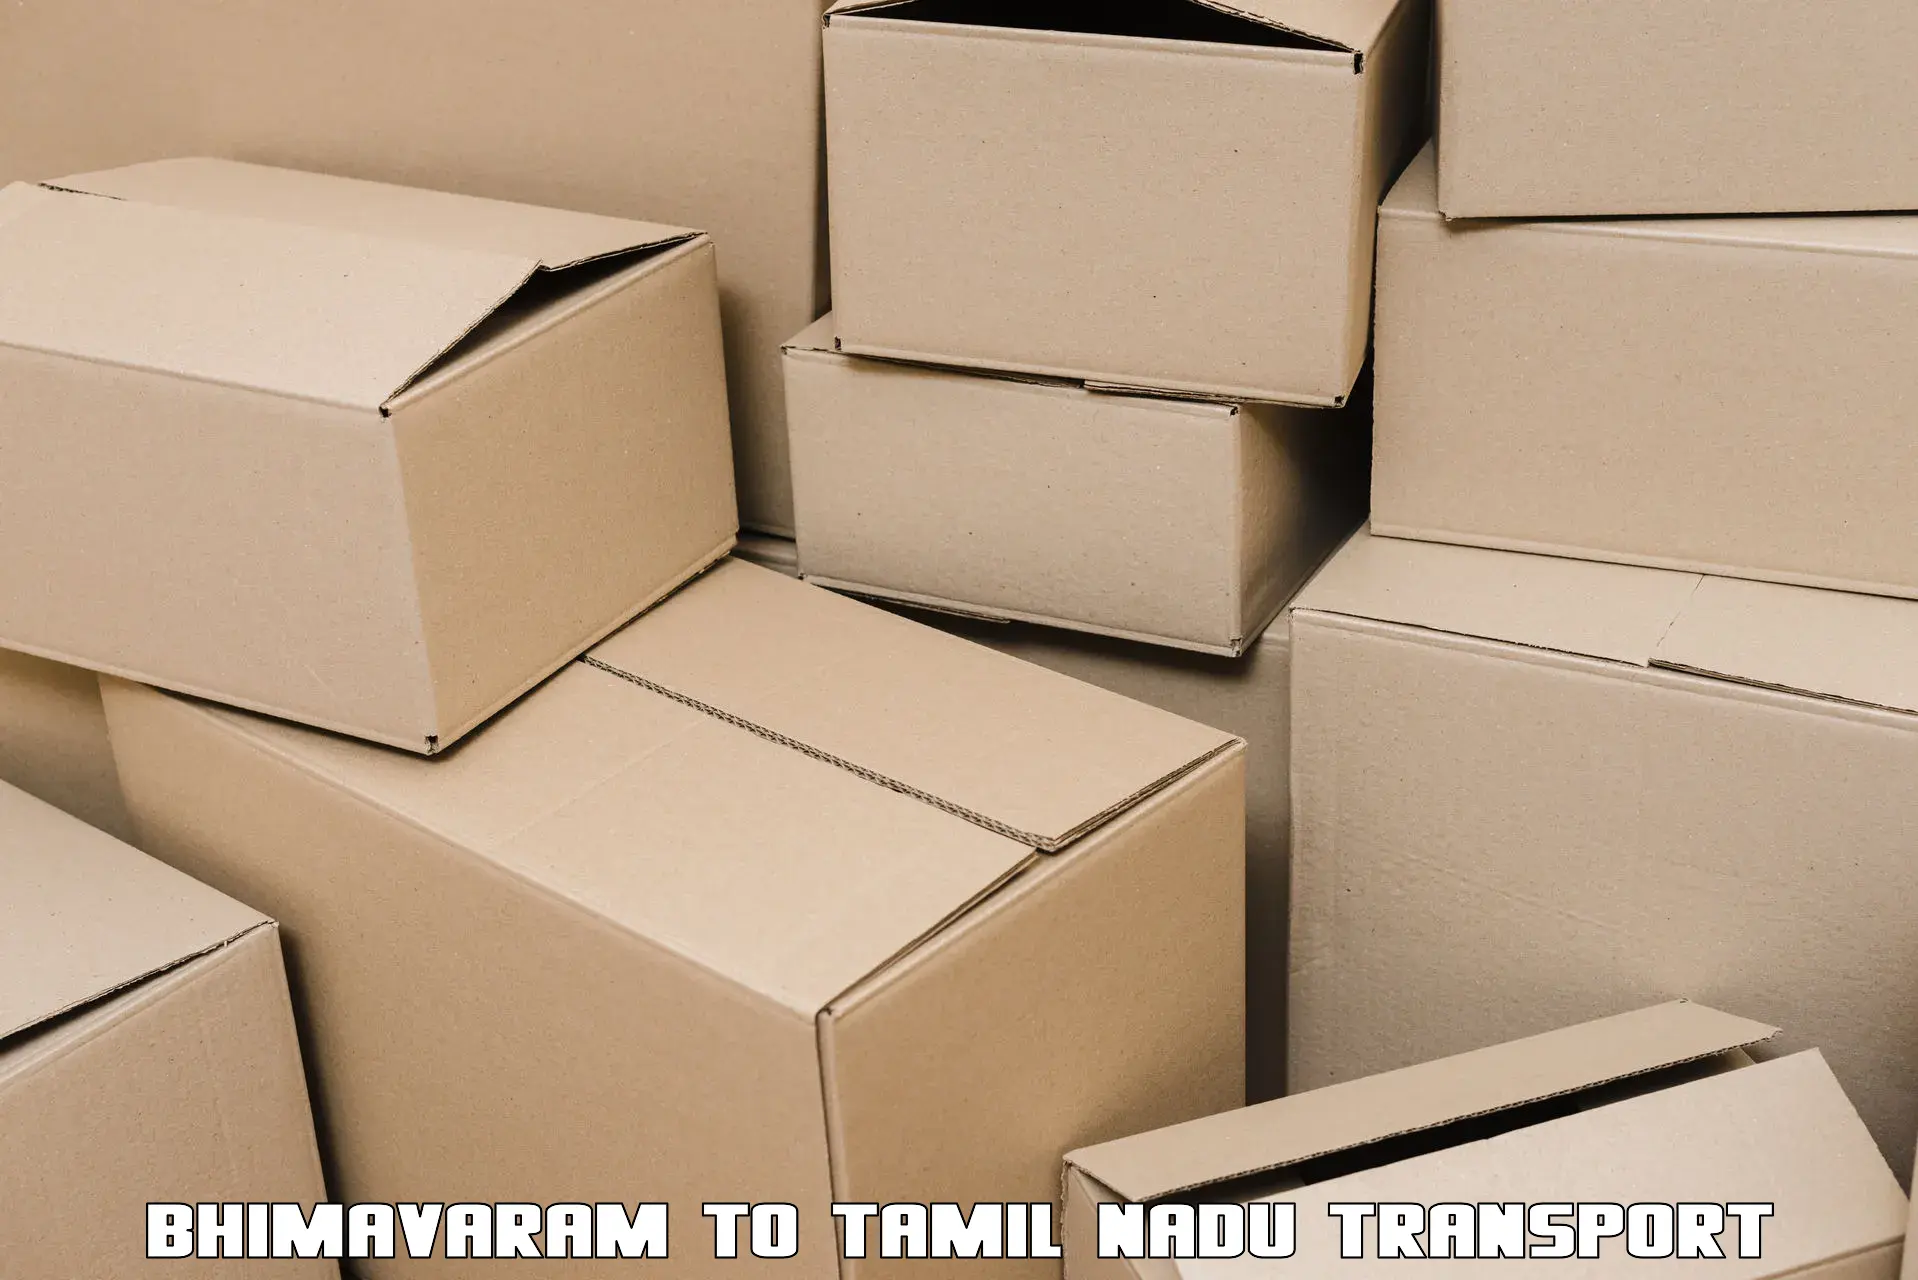 Shipping partner Bhimavaram to Tamil Nadu